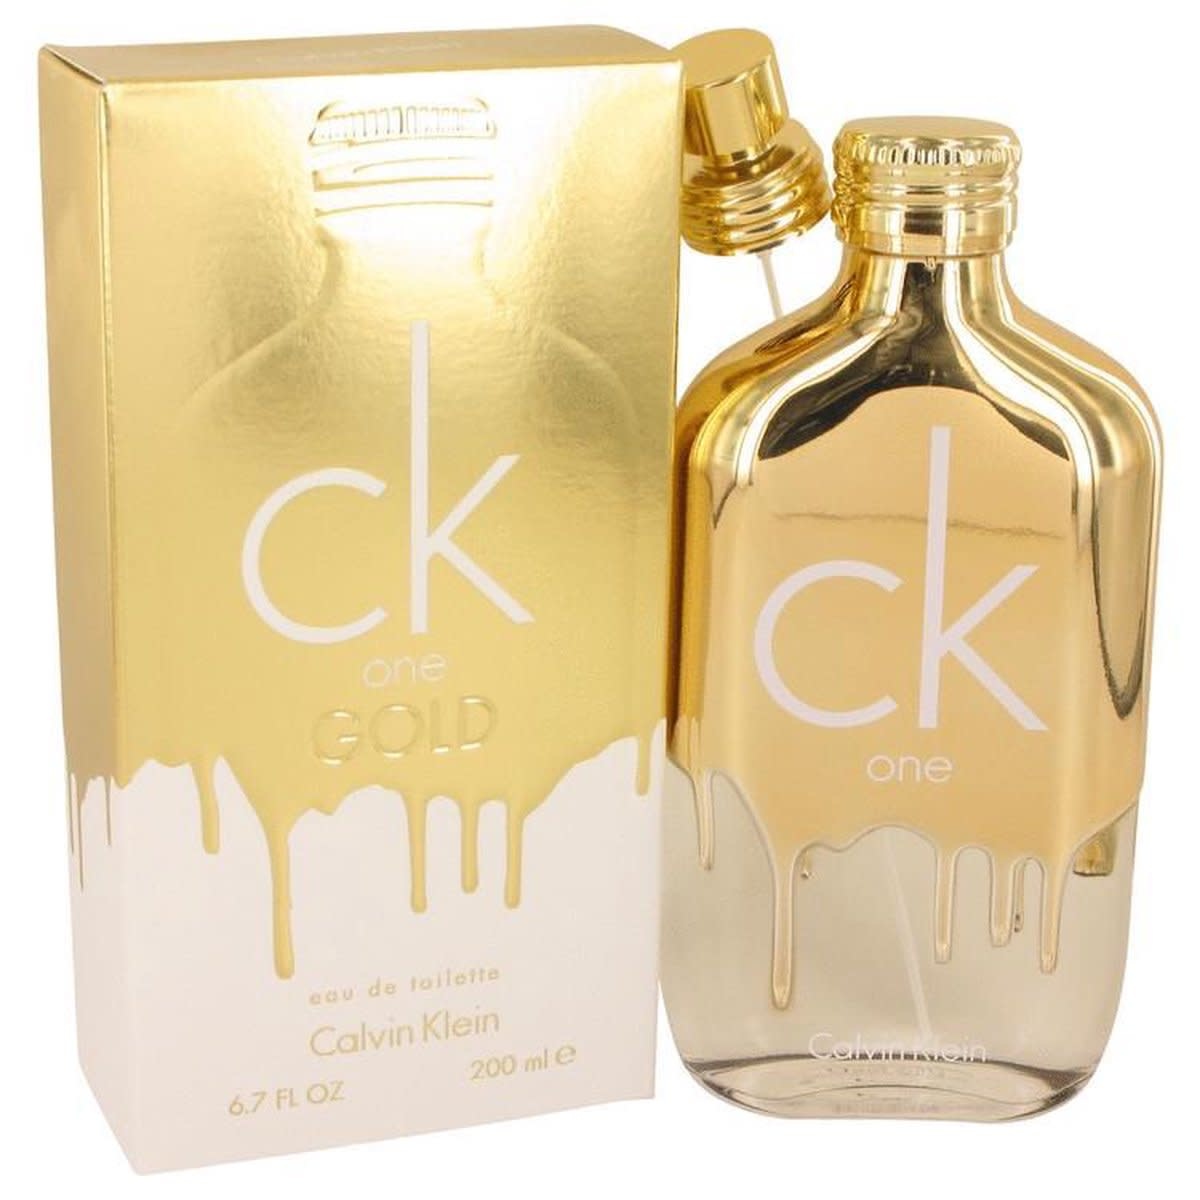 Le Parfumier - Calvin Klein Ck One Gold Eau de Toilette - Le Parfumier  Perfume Store